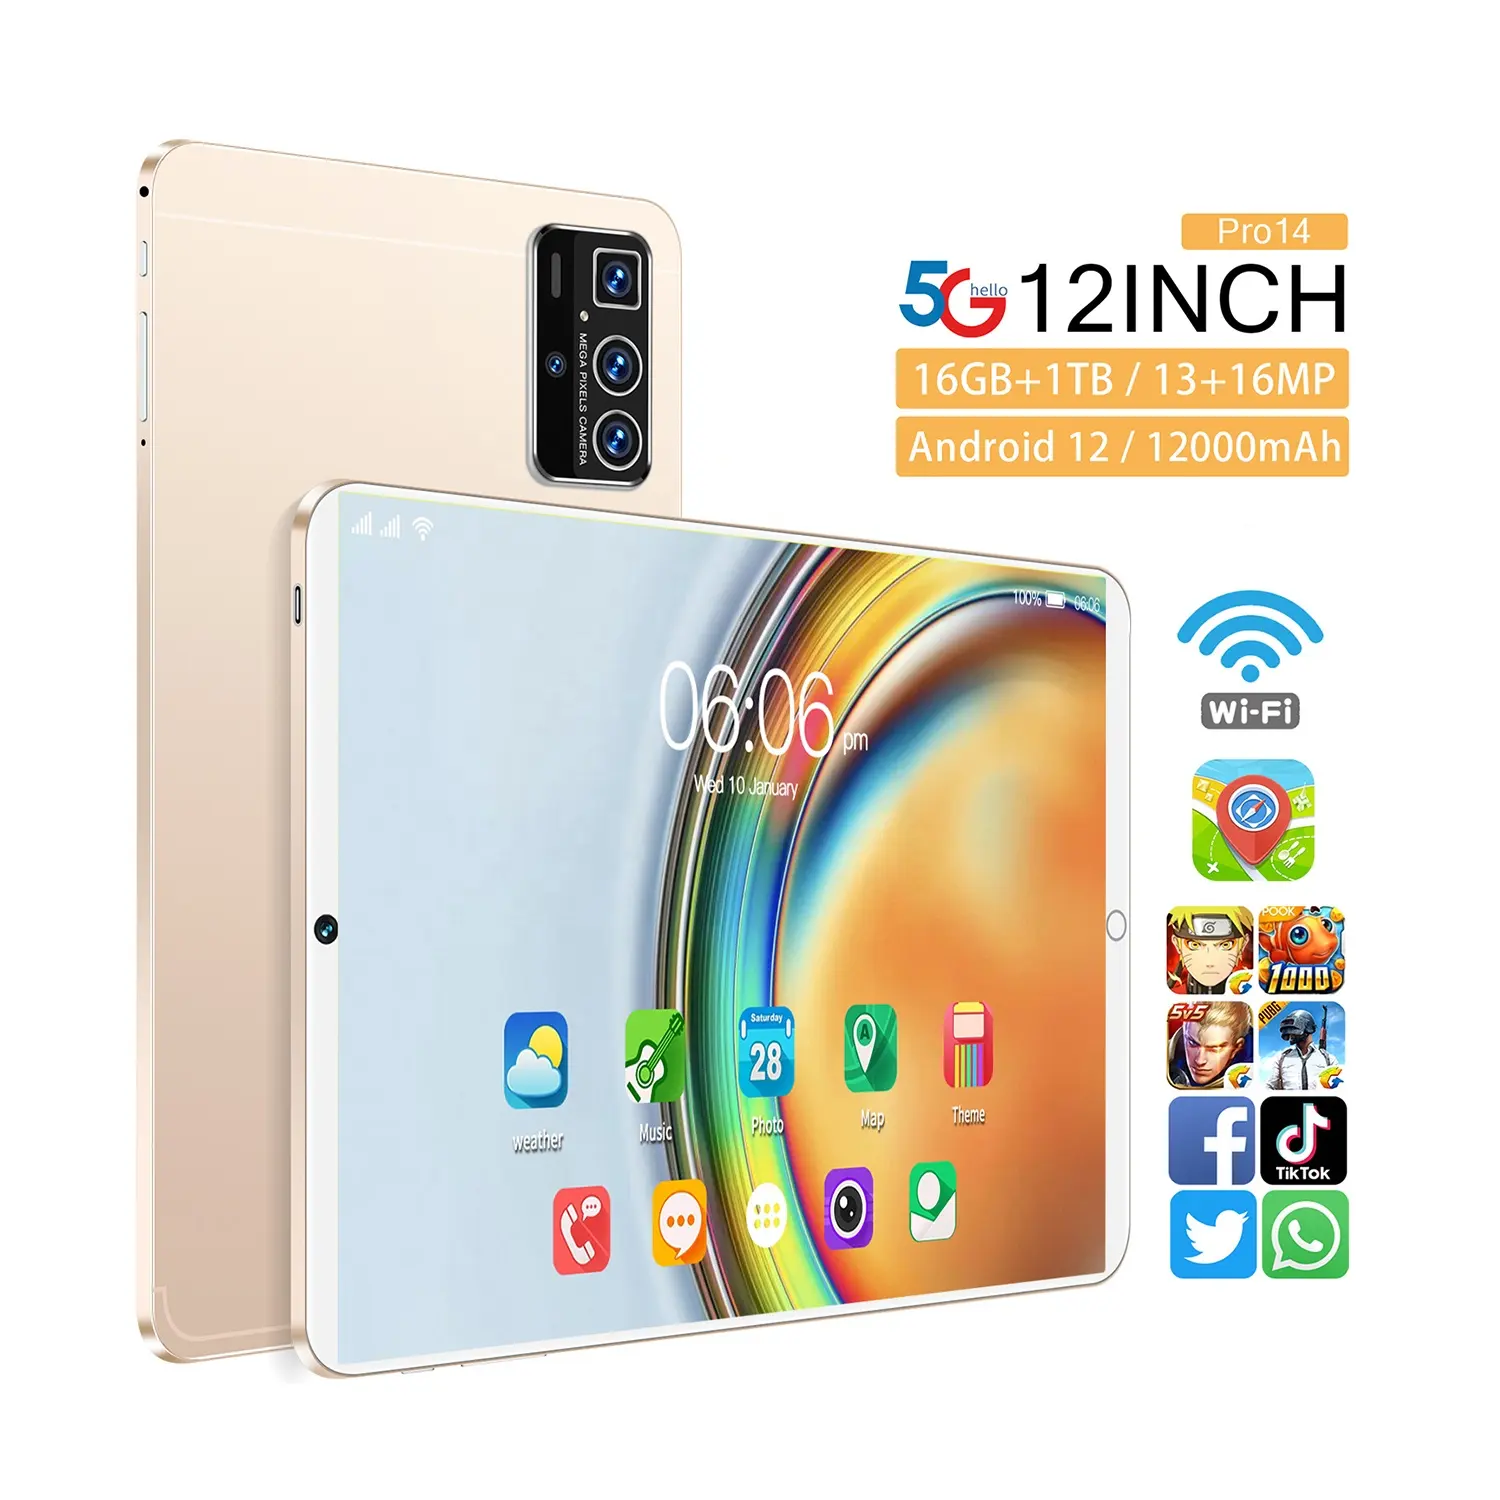 Achat fou de la nouvelle Pro 14 12 pouces écran HD 10 core Android 12 système téléphone 12000mAh capacité tablette